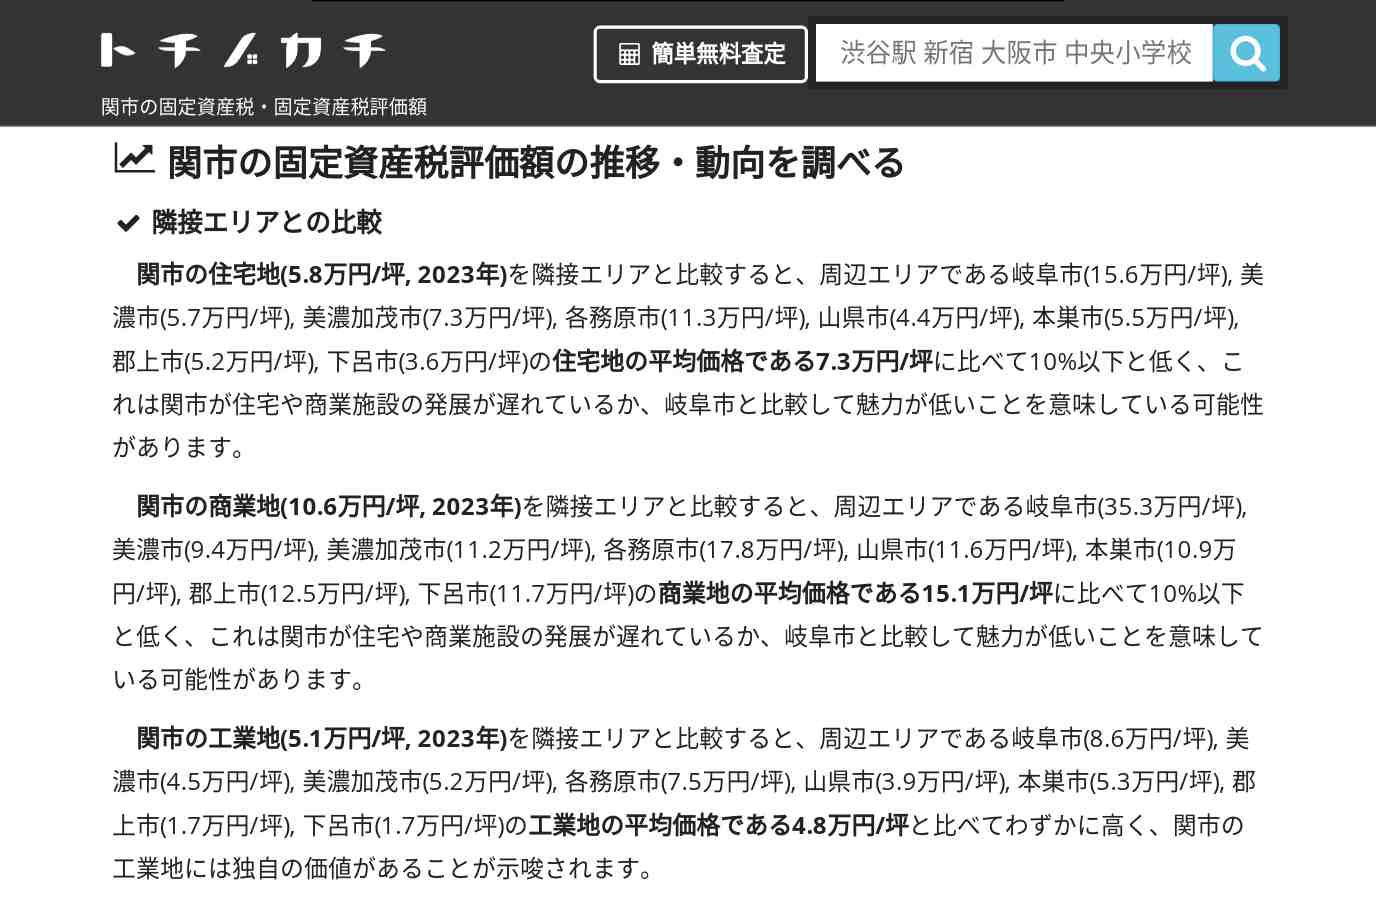 倉知小学校(岐阜県 関市)周辺の固定資産税・固定資産税評価額 | トチノカチ